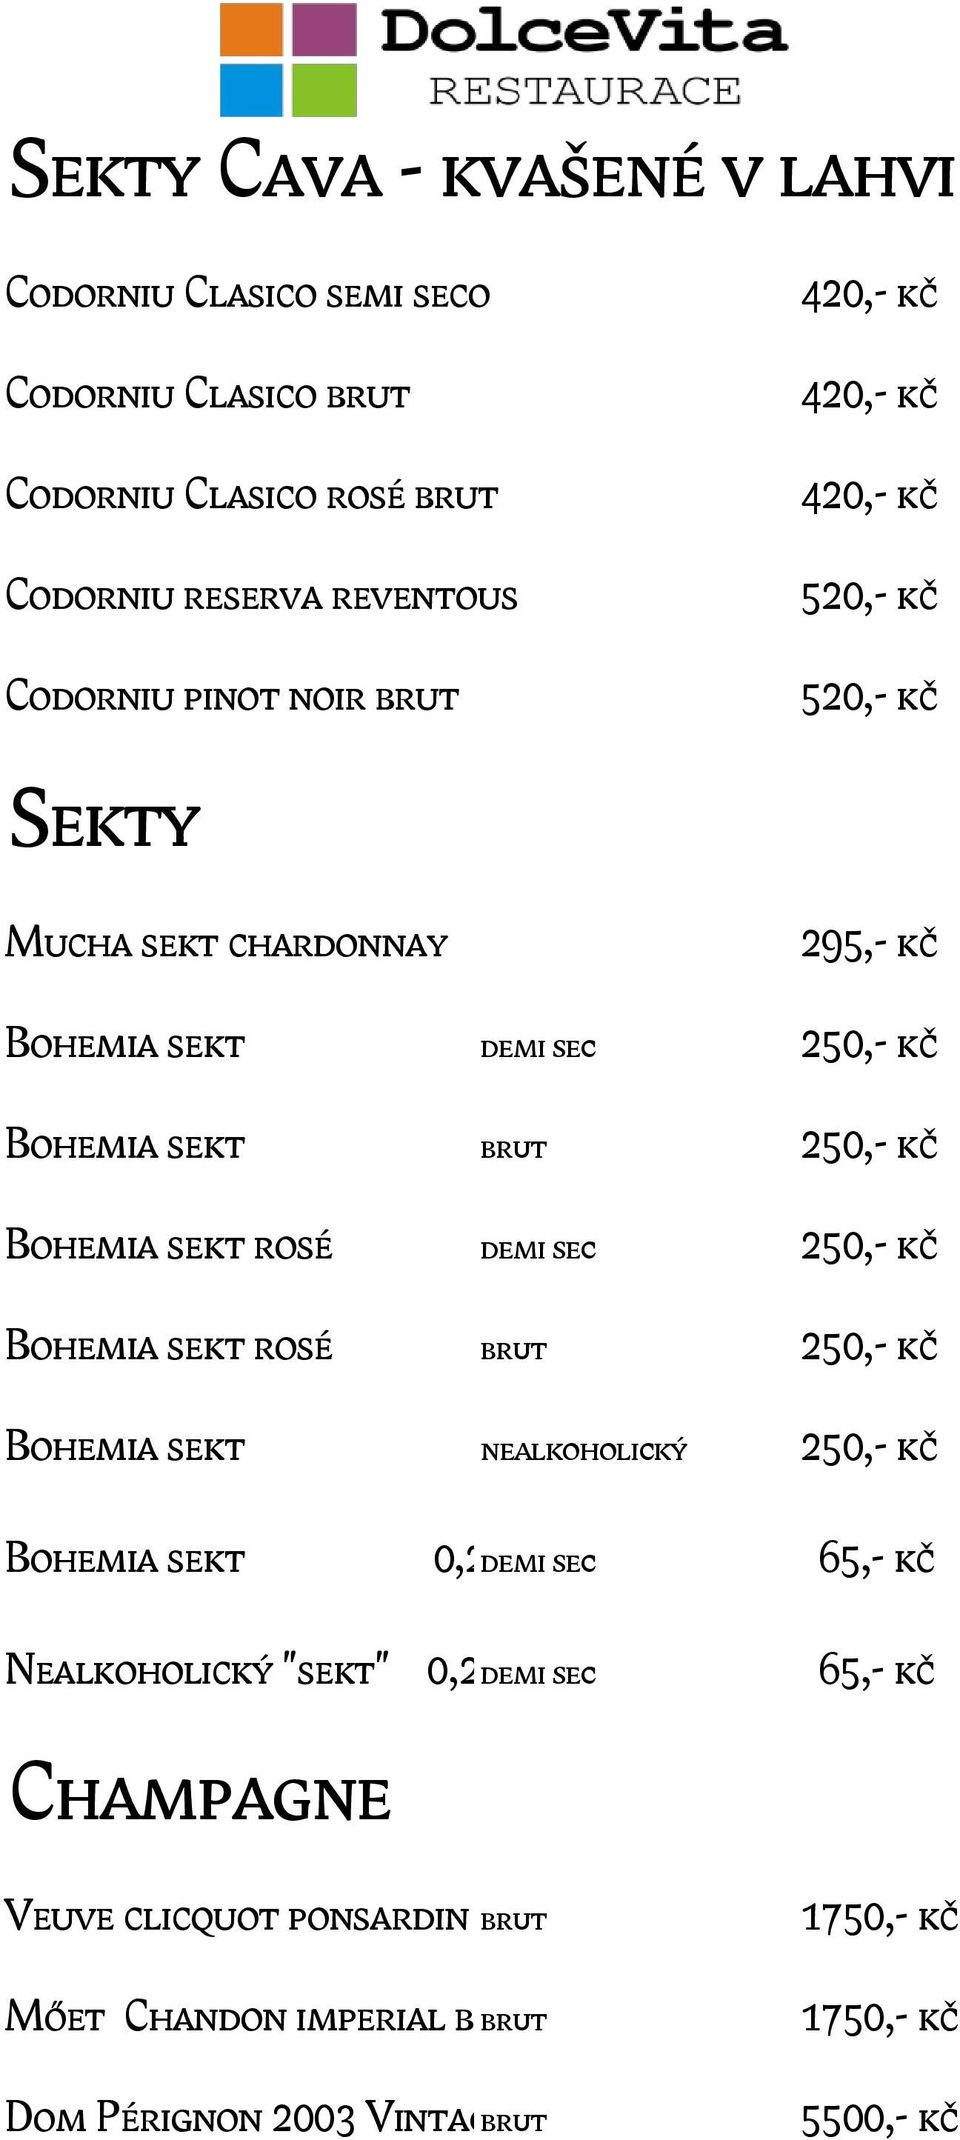 sekt rosé demi sec 250,- kč Bohemia sekt rosé brut 250,- kč Bohemia sekt nealkoholický 250,- kč Bohemia sekt 0,2 demi l.